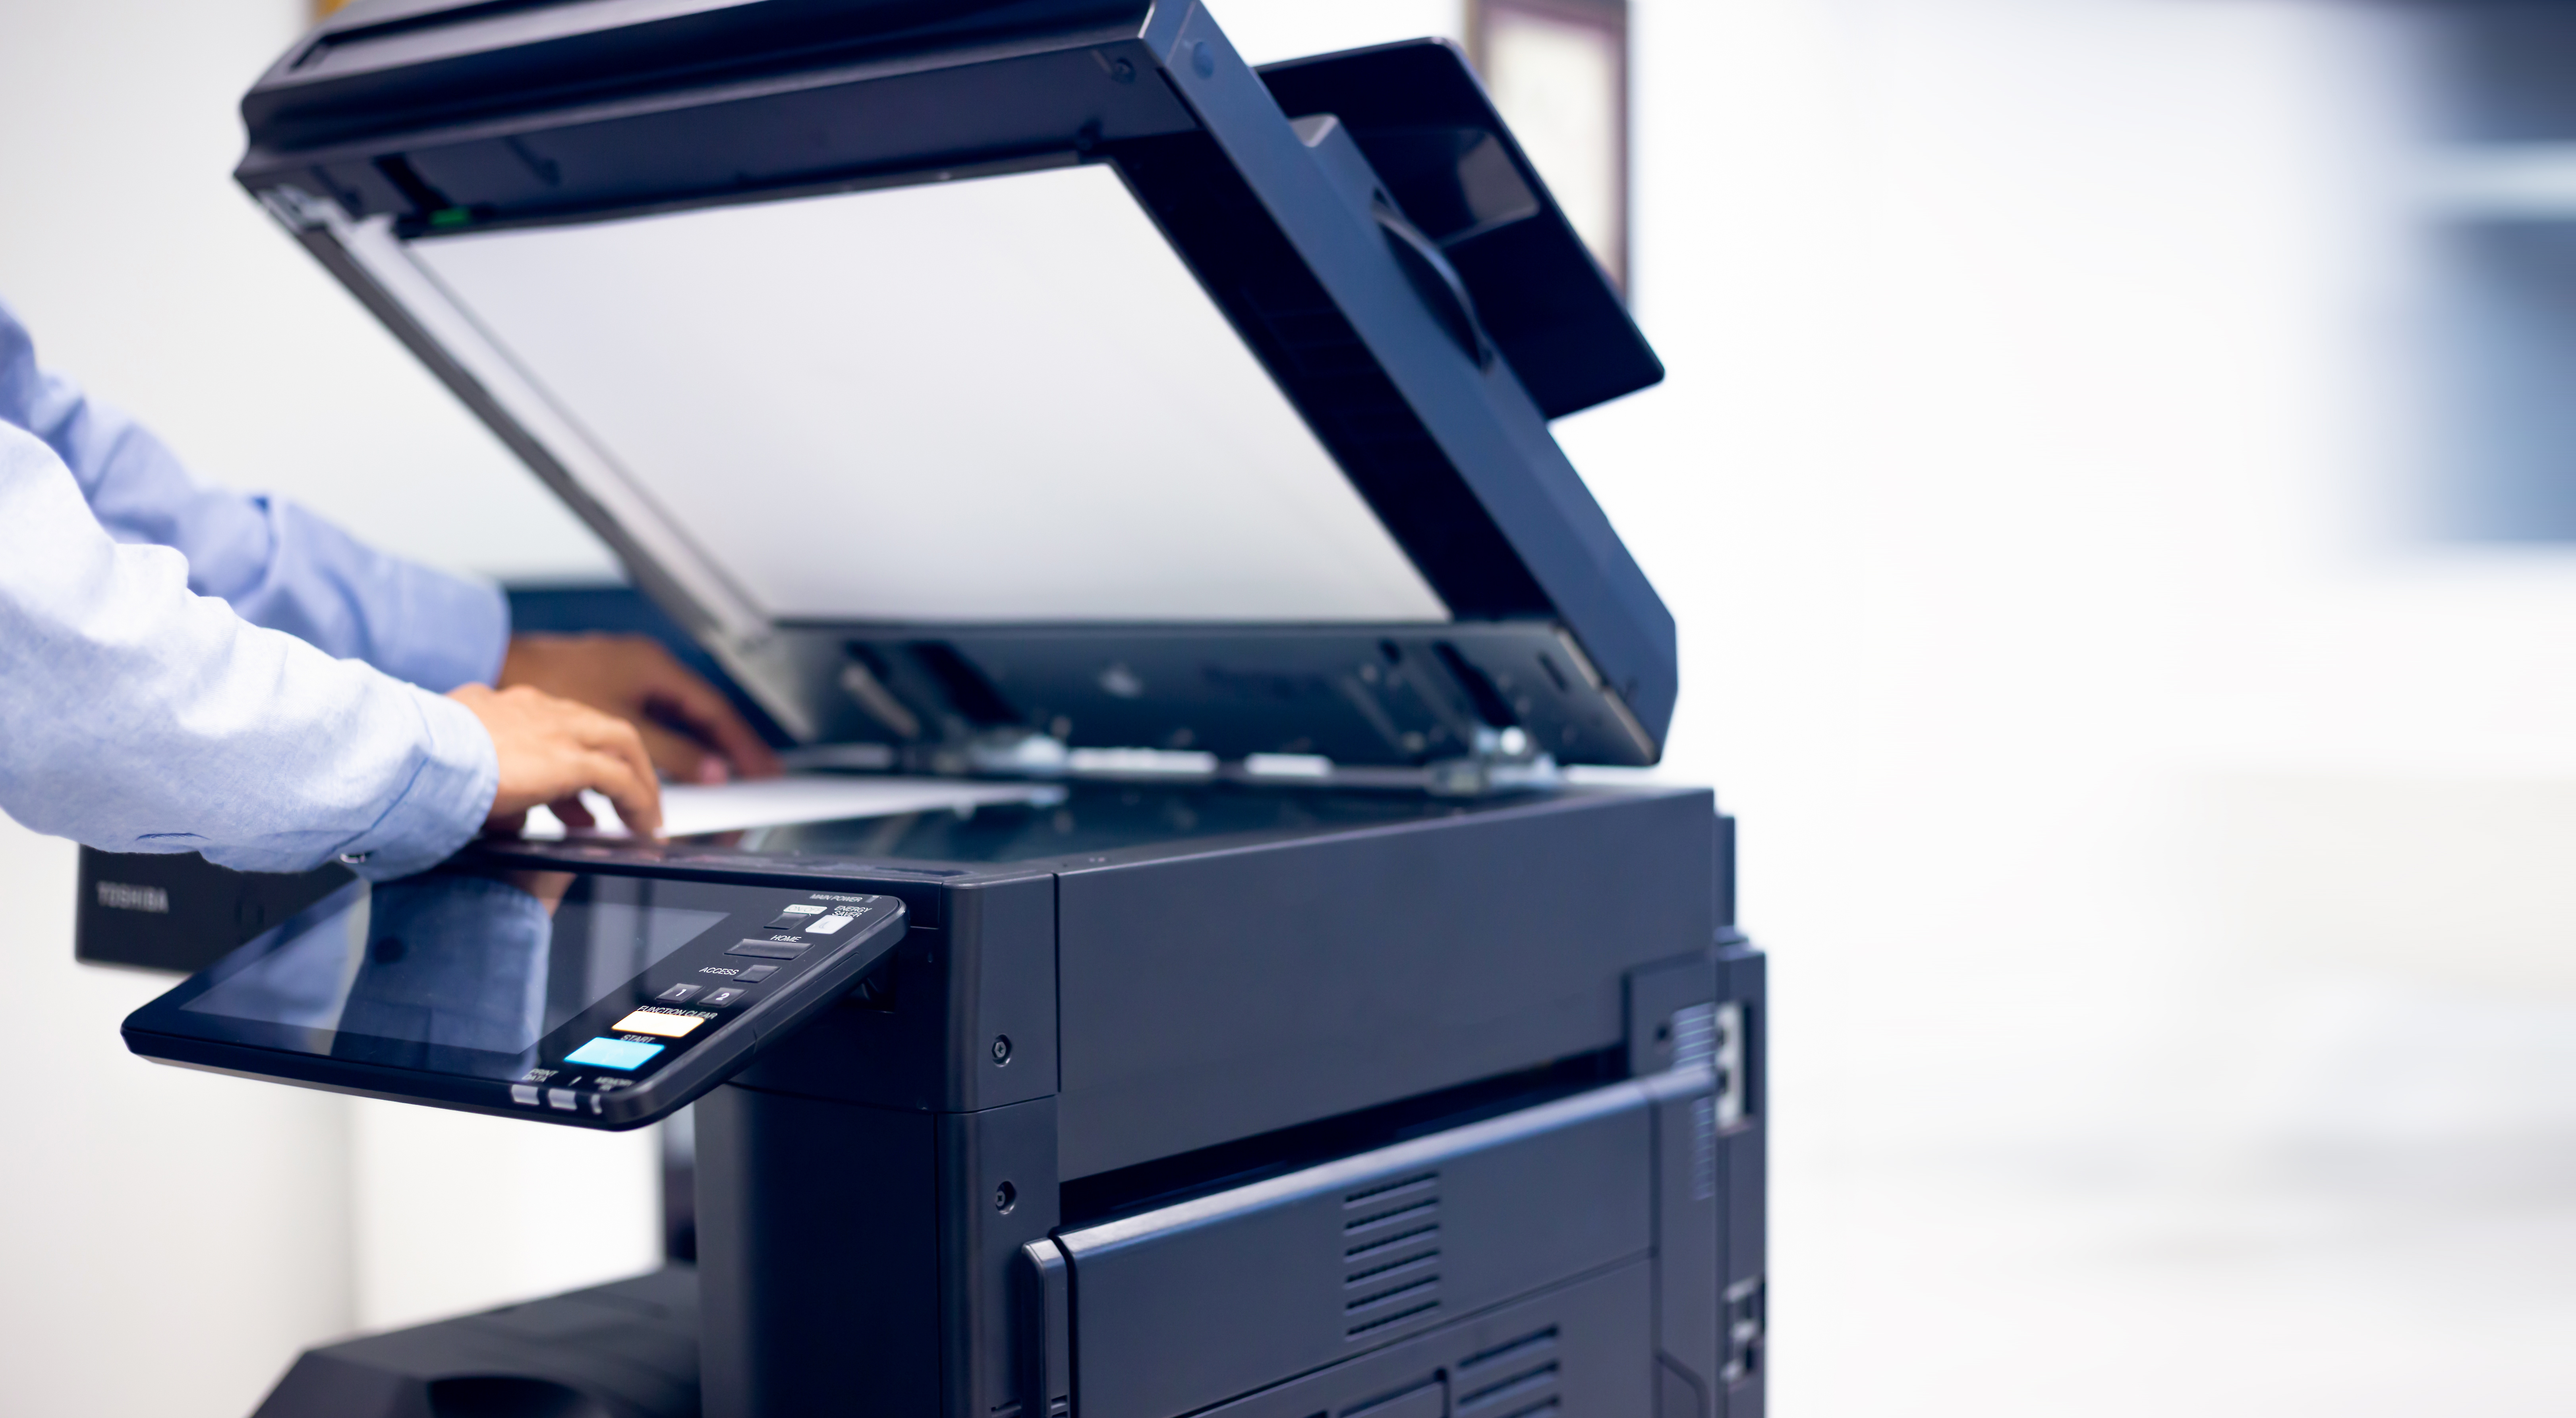 「デジタル印刷機」と「コピー（複写）機」は異なる機器